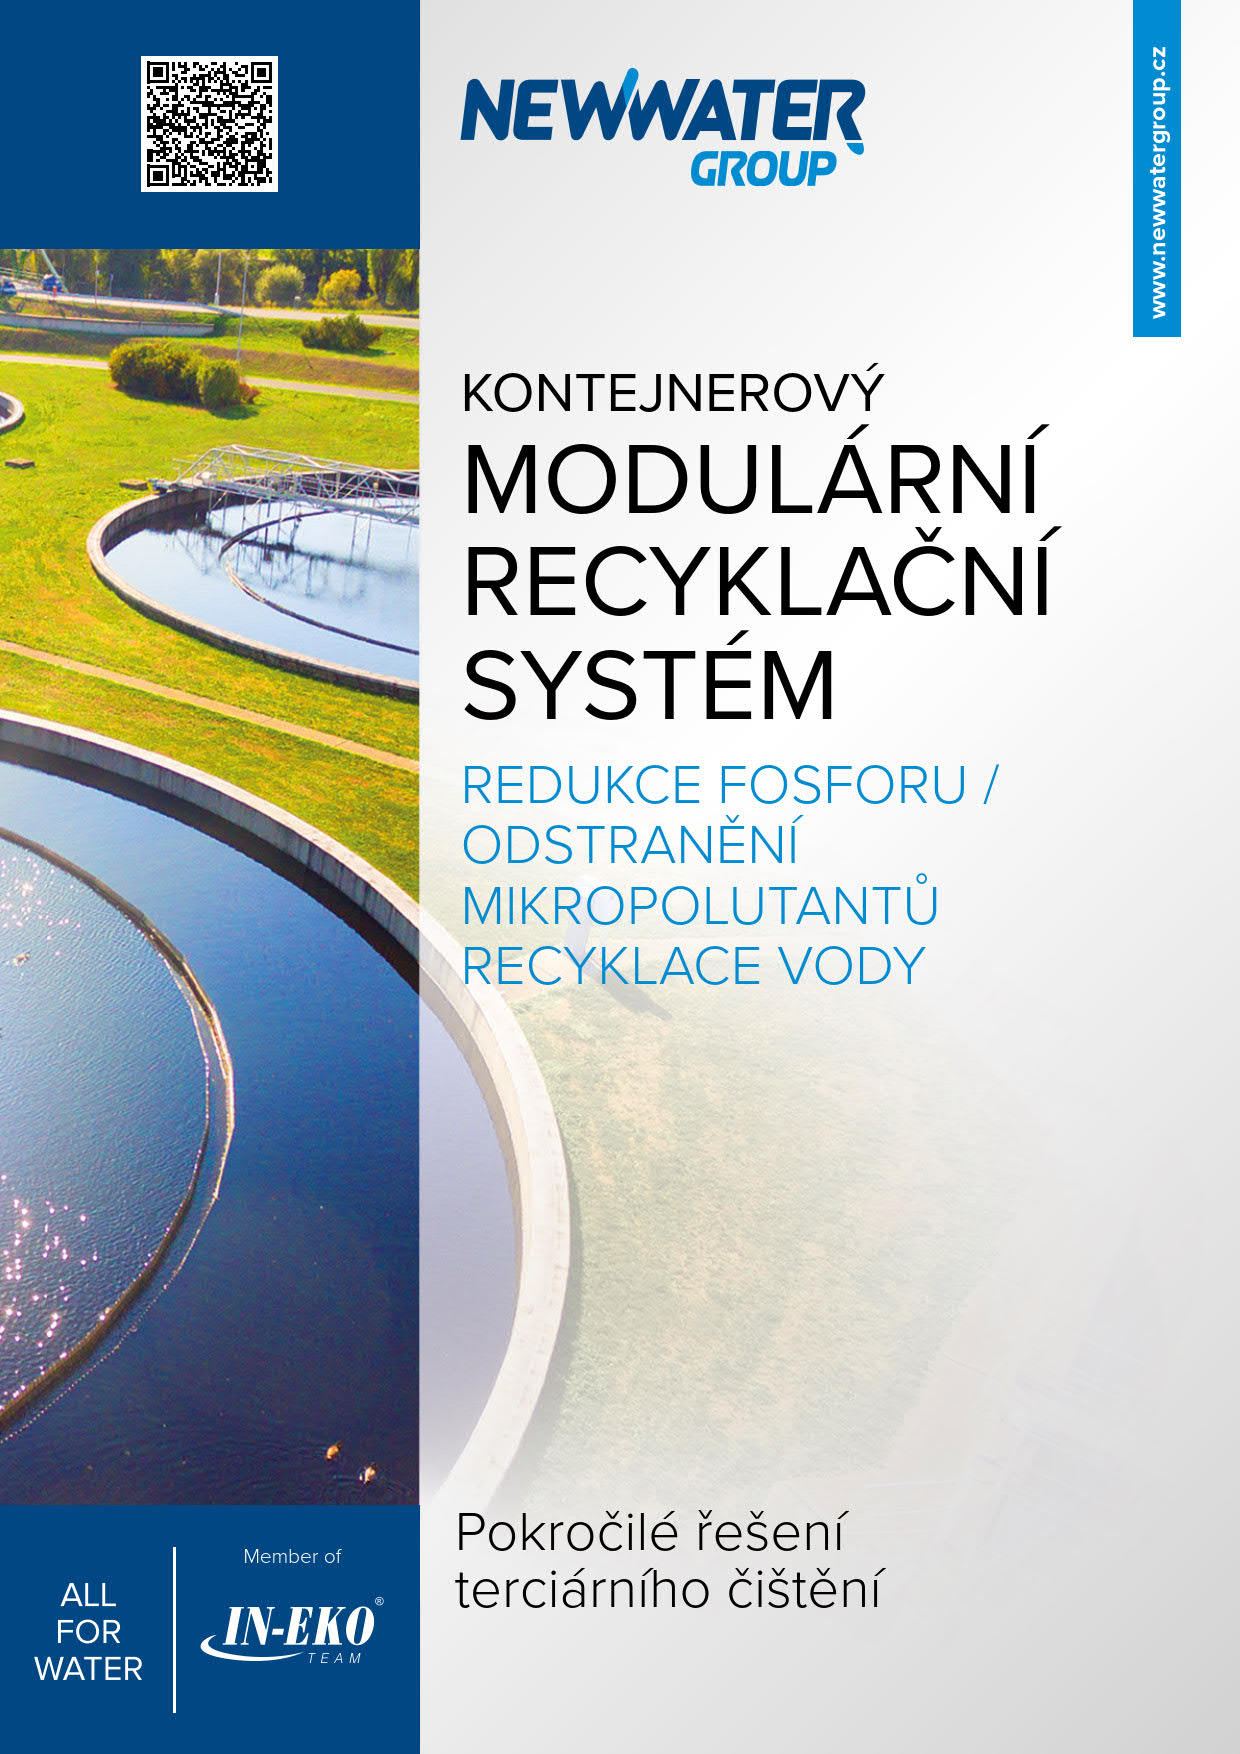 Letak_nwg-Kontejnerovy-modularni-recyklacni-system-CZ-Title-WEB_1